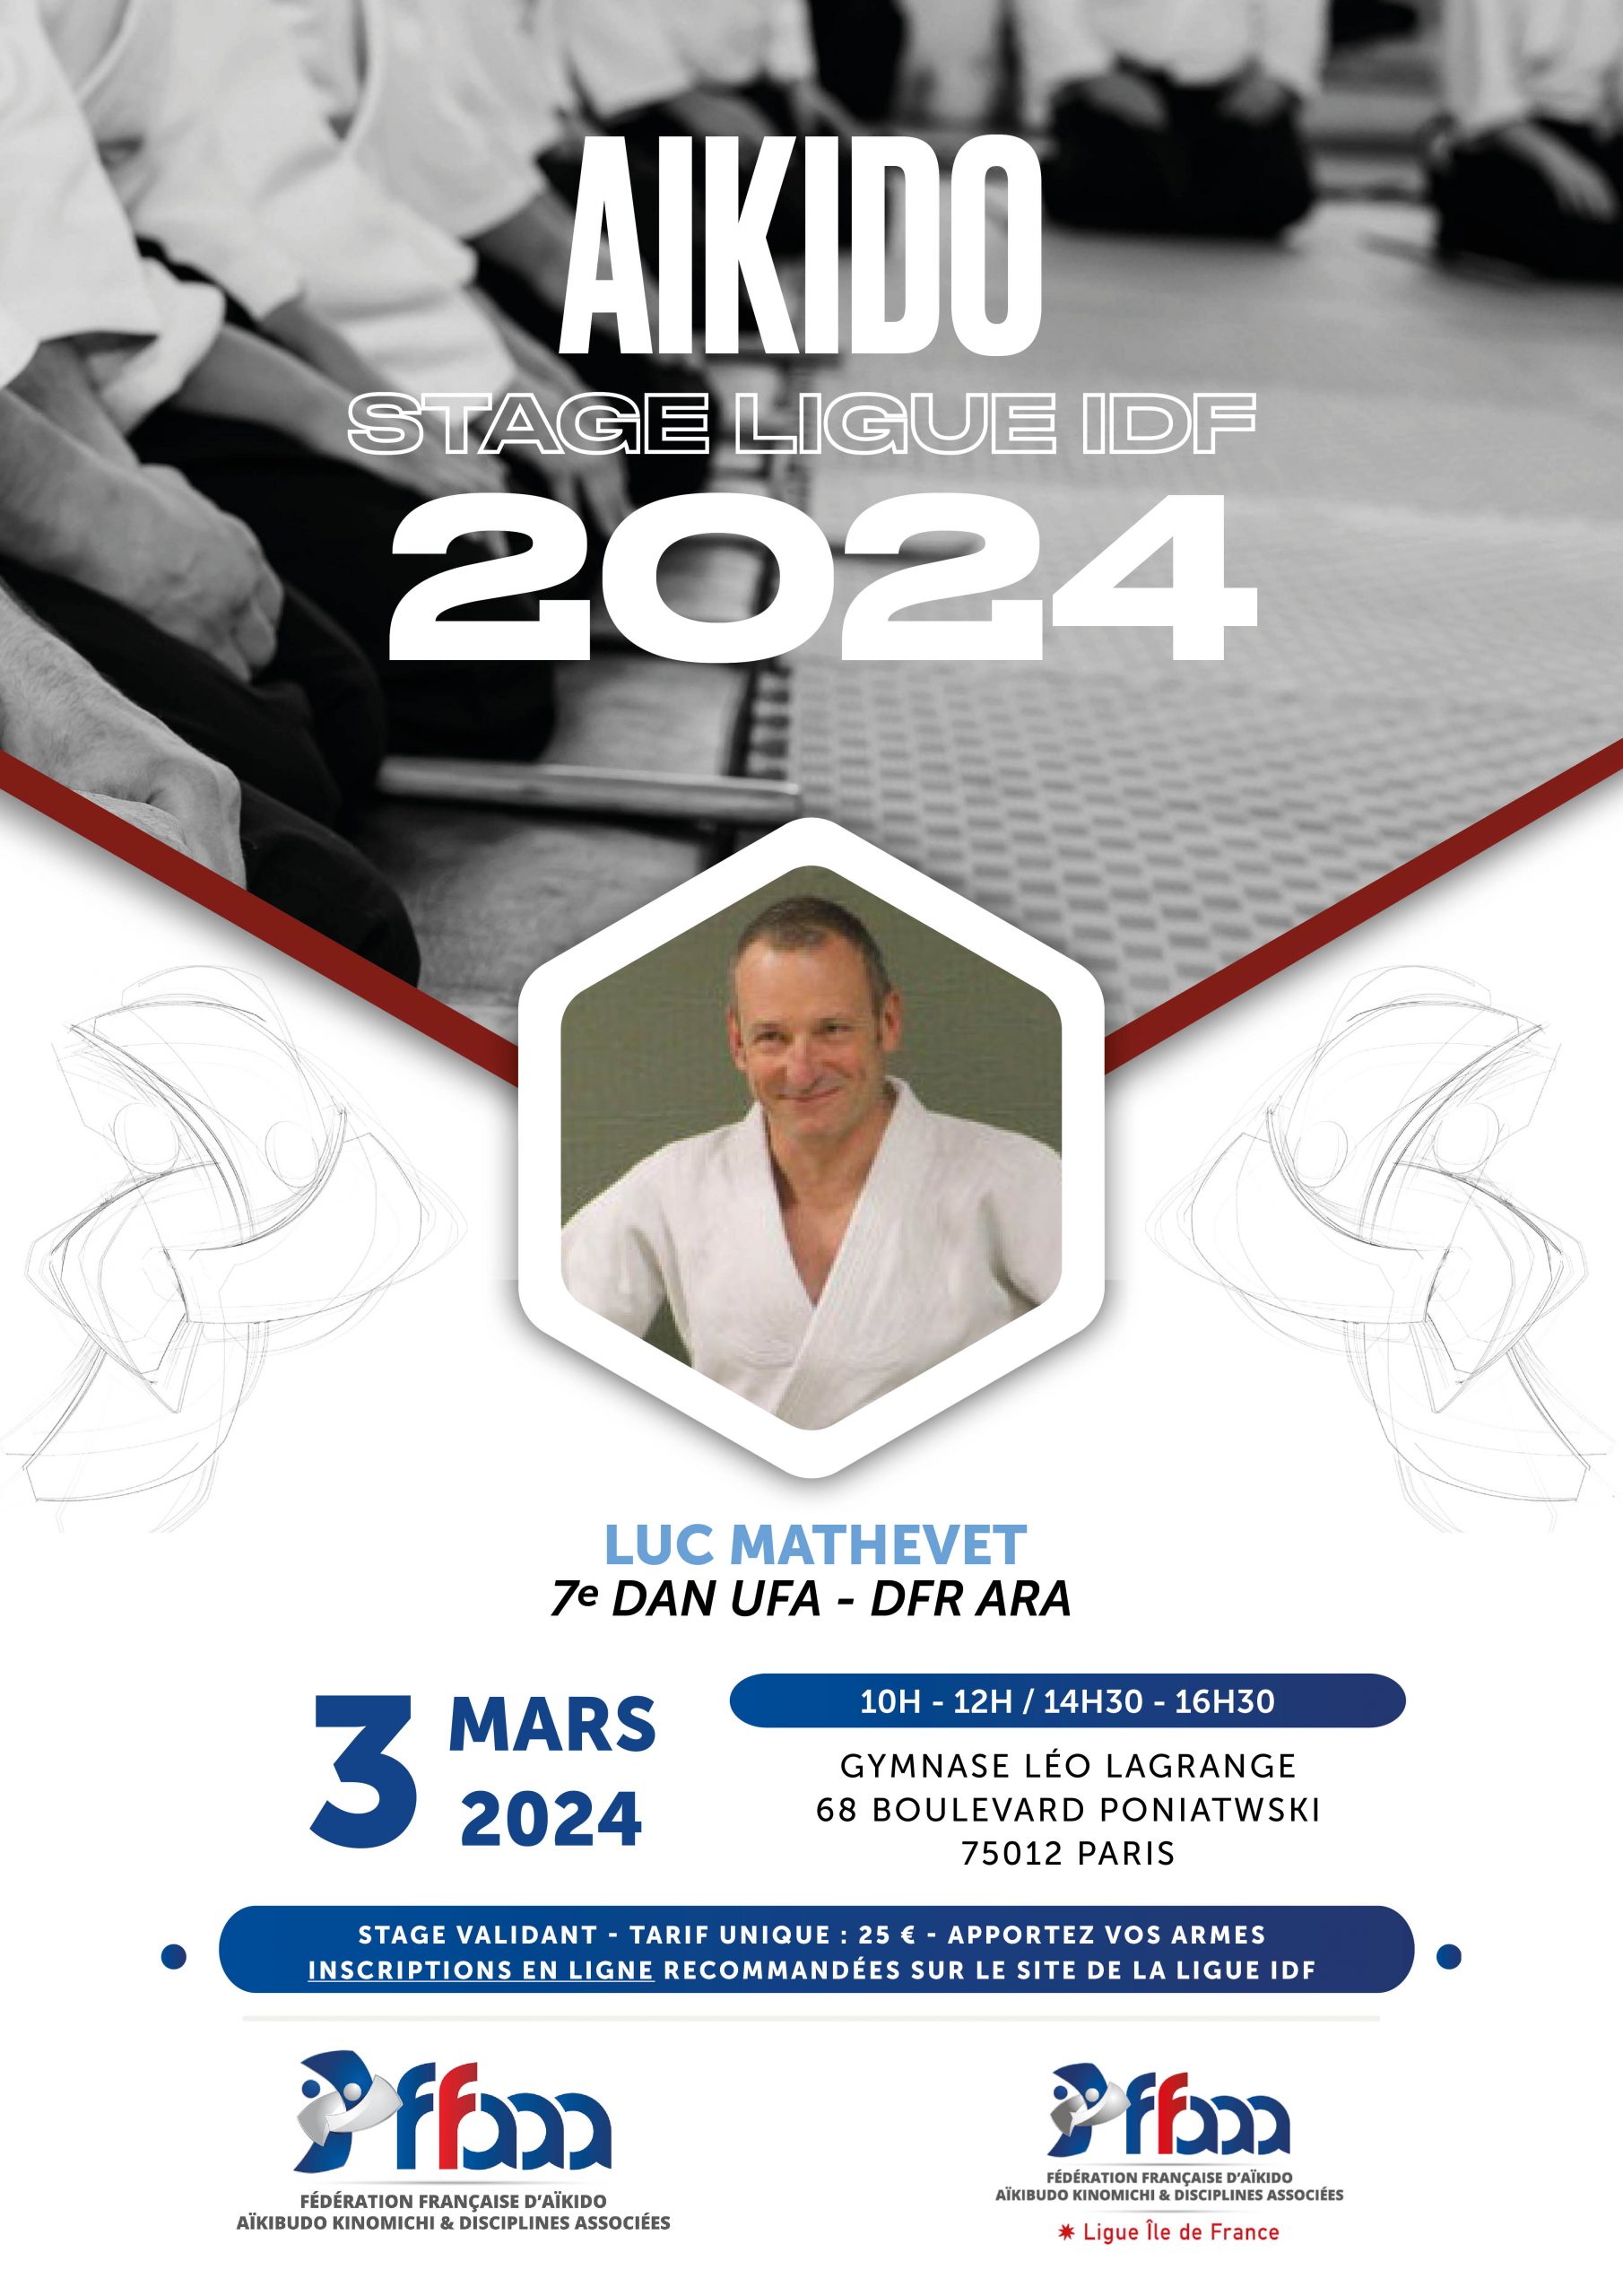 Luc Mathevet 7ème Dan - stage de ligue - dimanche 3 mars 2024